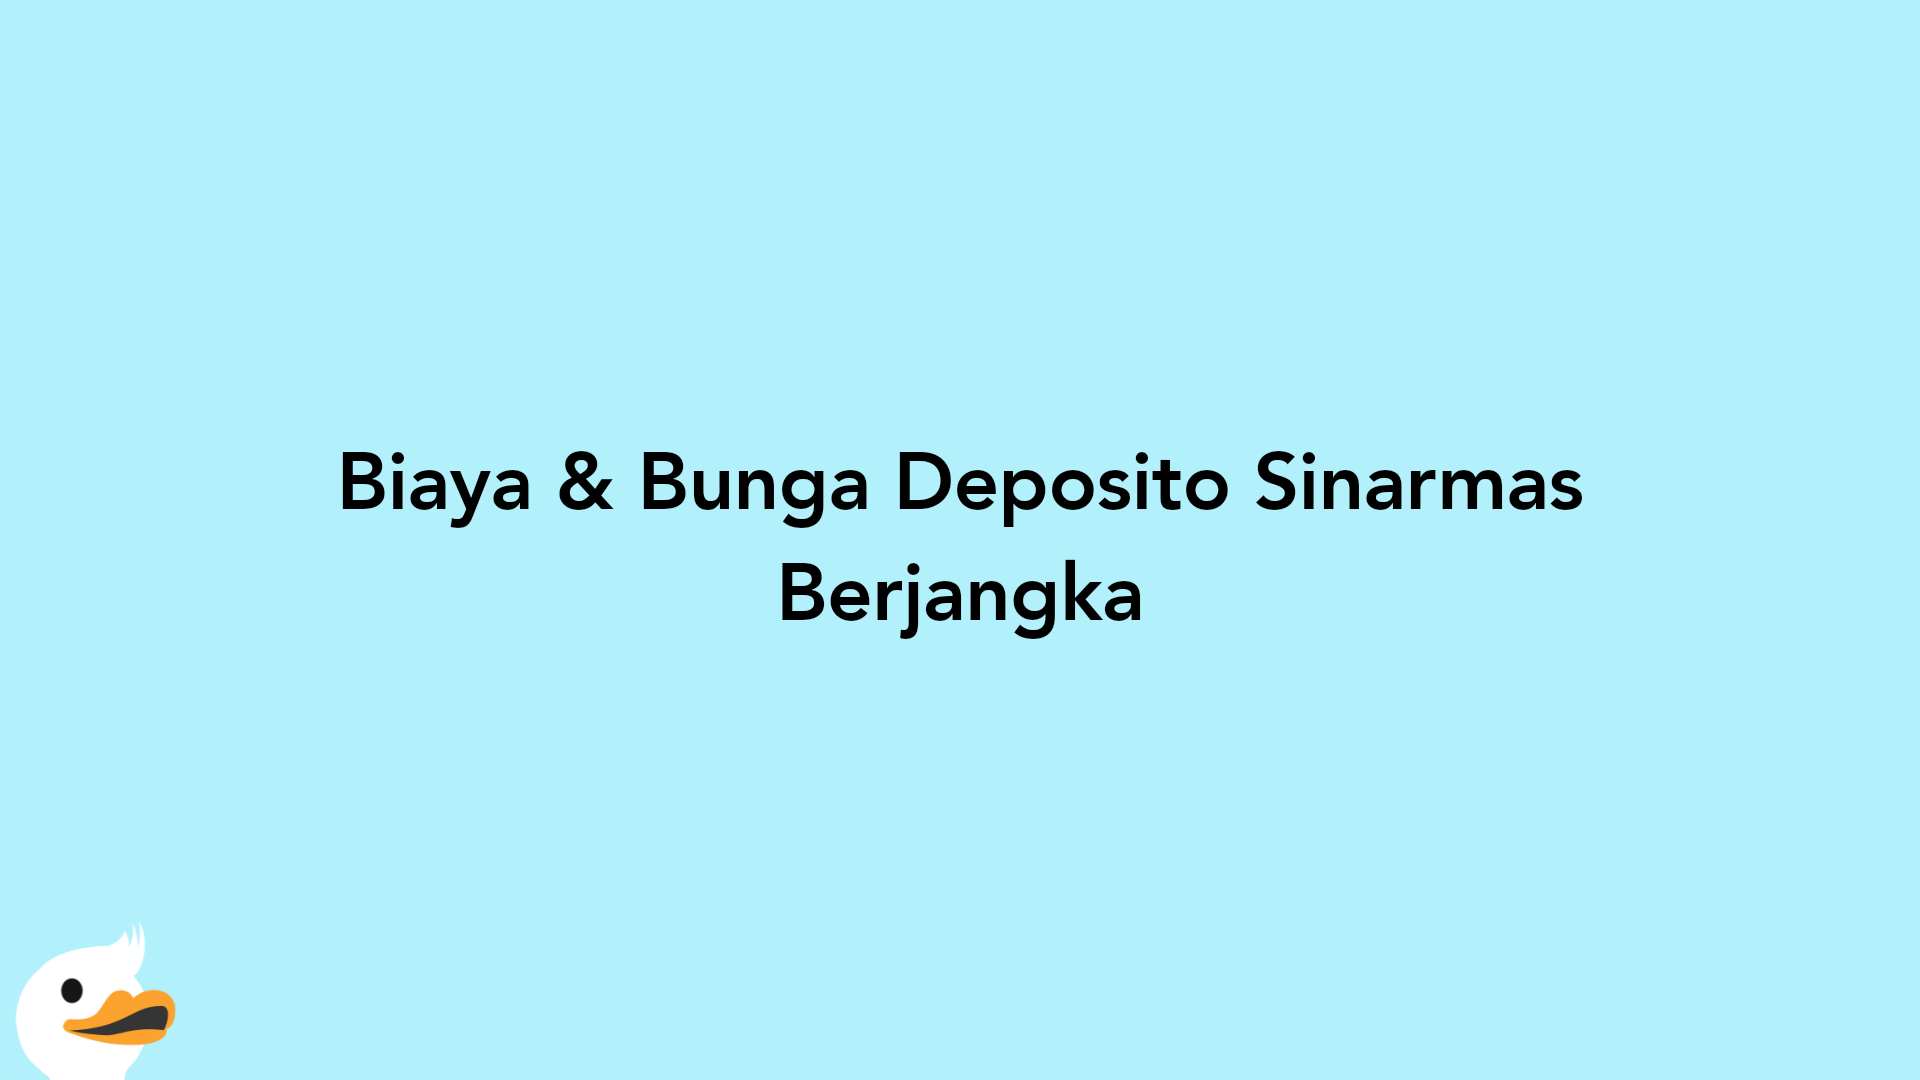 Biaya & Bunga Deposito Sinarmas Berjangka